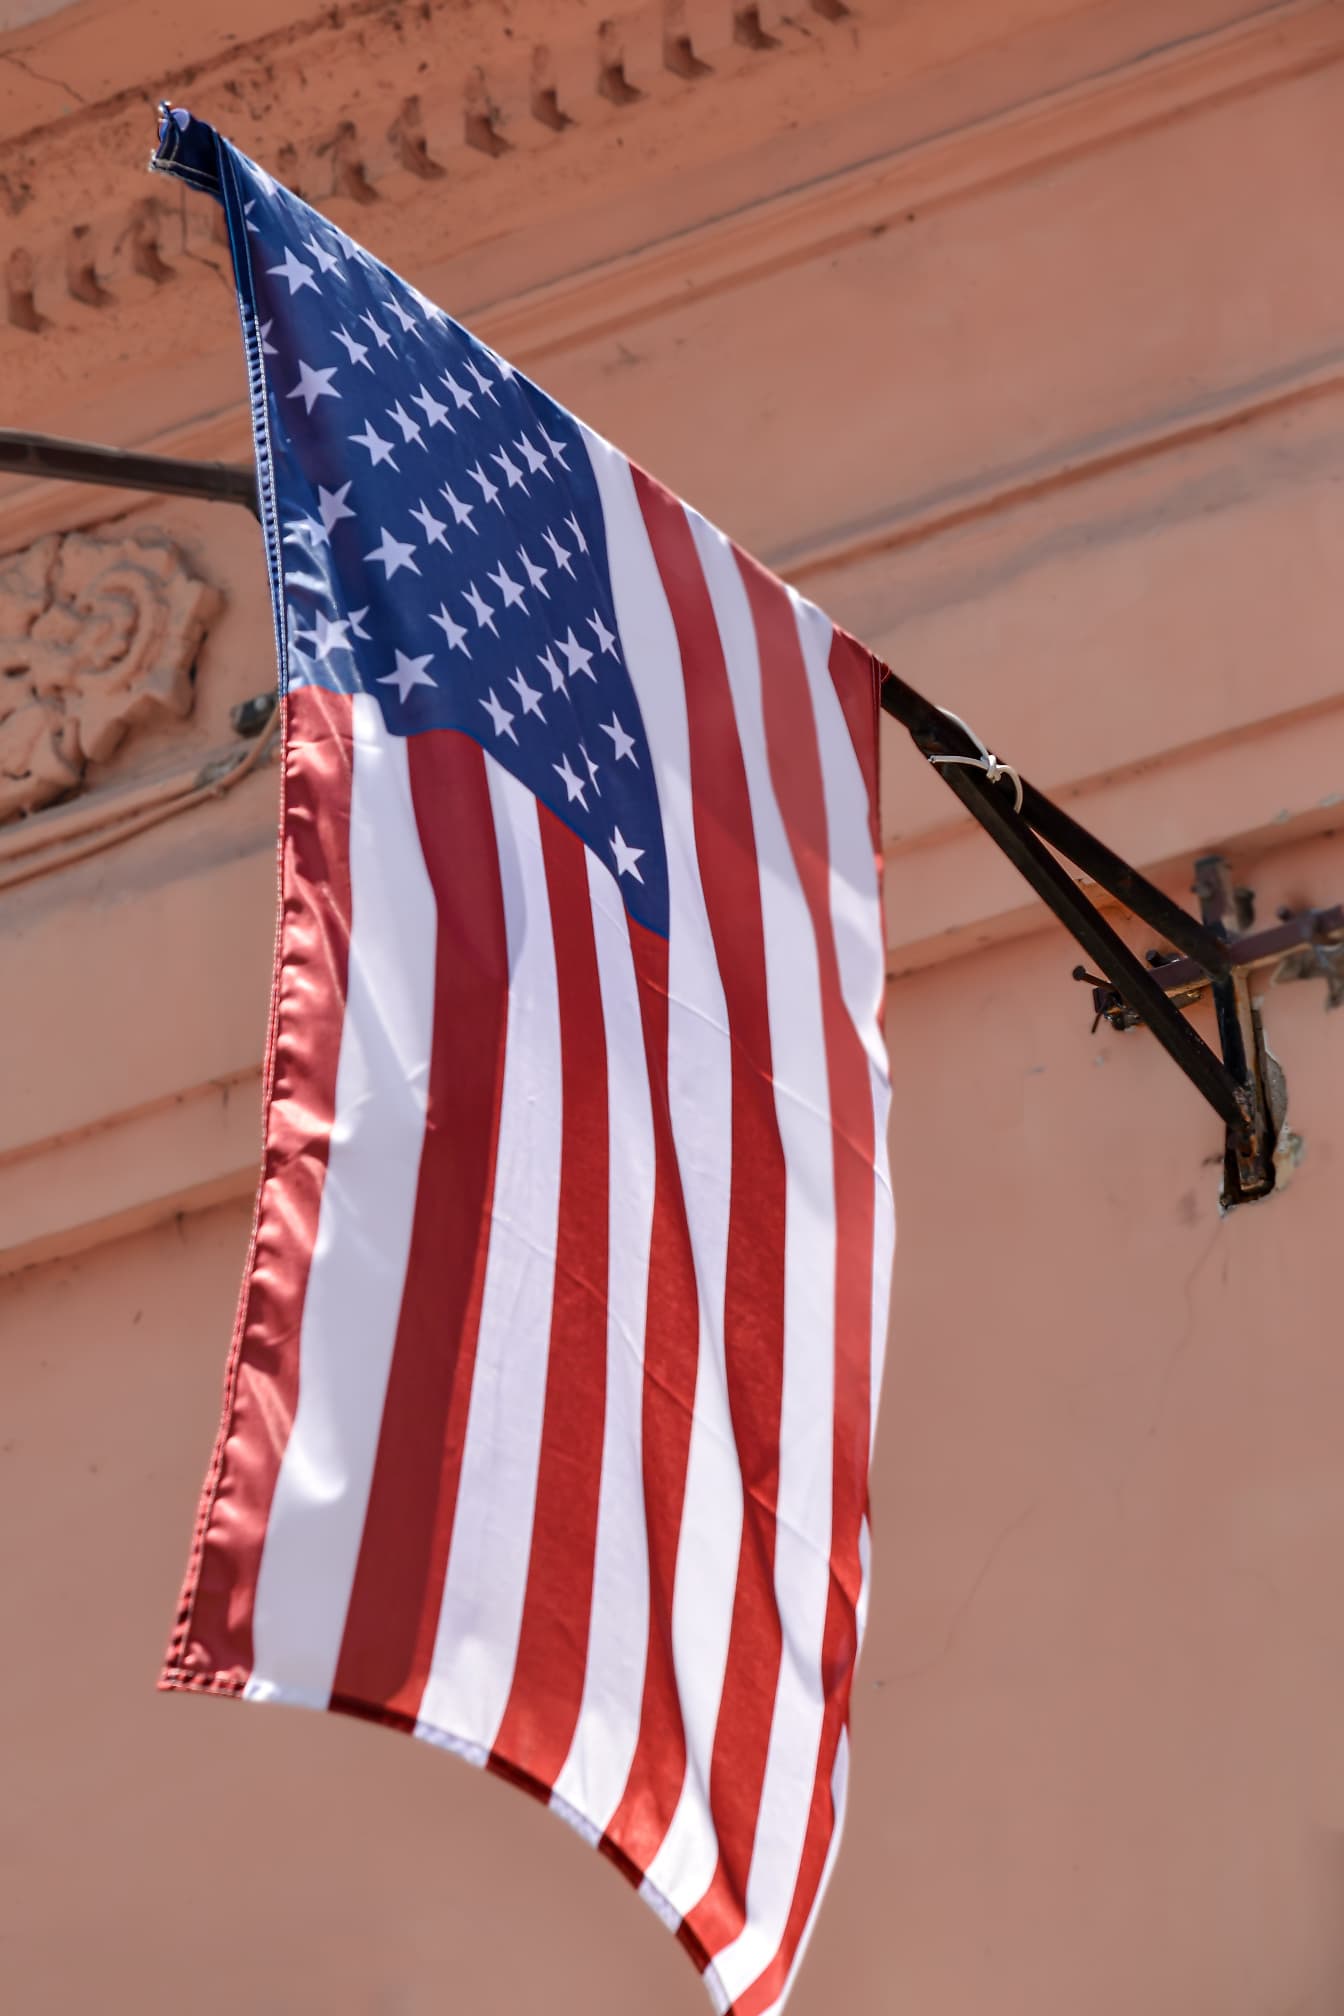 Amerikan yhdysvaltojen lippu (USA) seinän lipputangossa